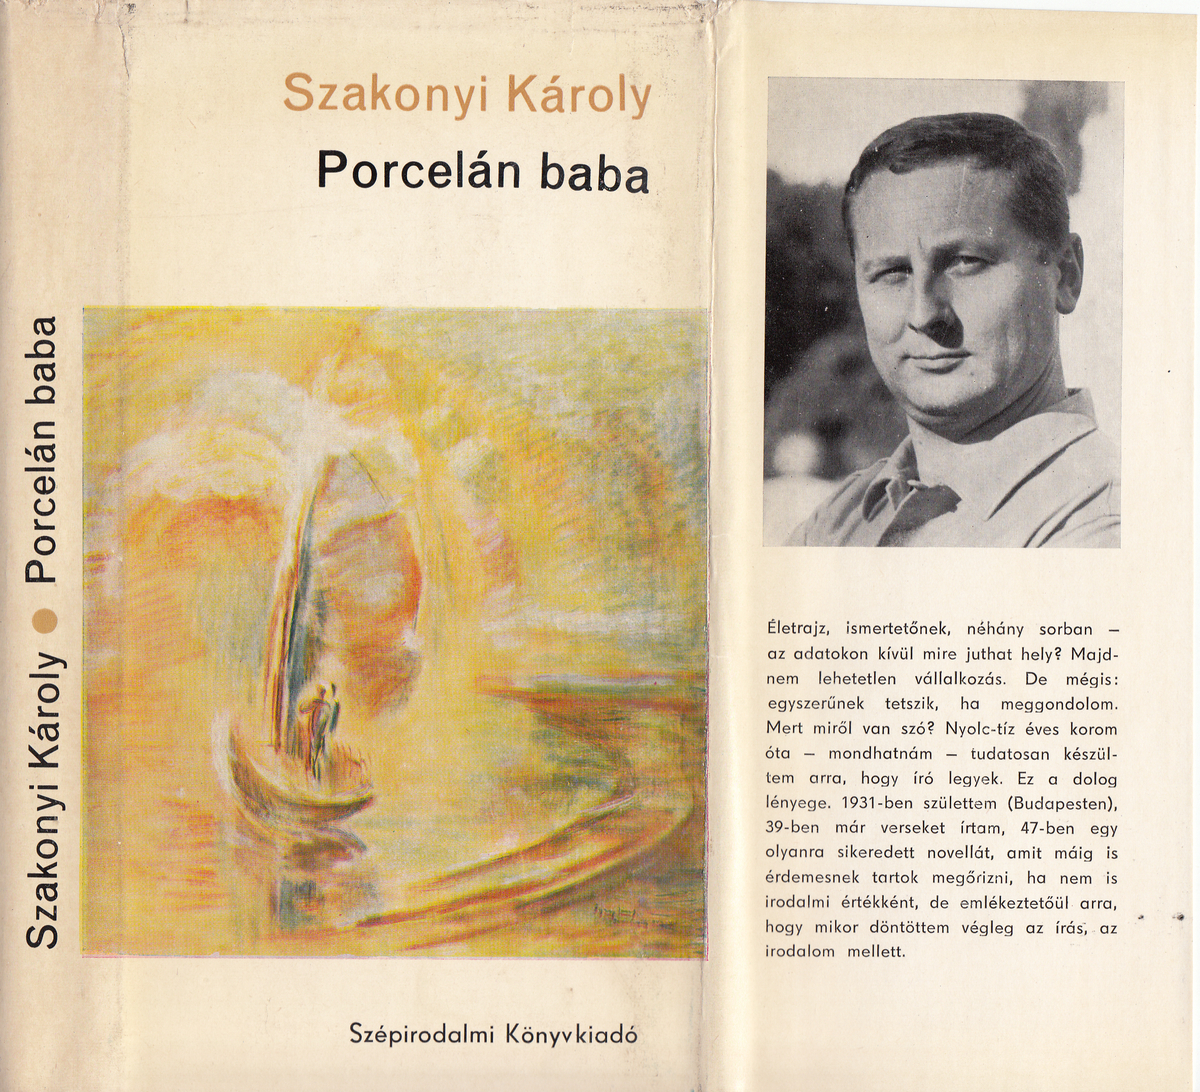 Szakonyi Károly: Porcelán baba, Szakonyi Károly | PLM Collection